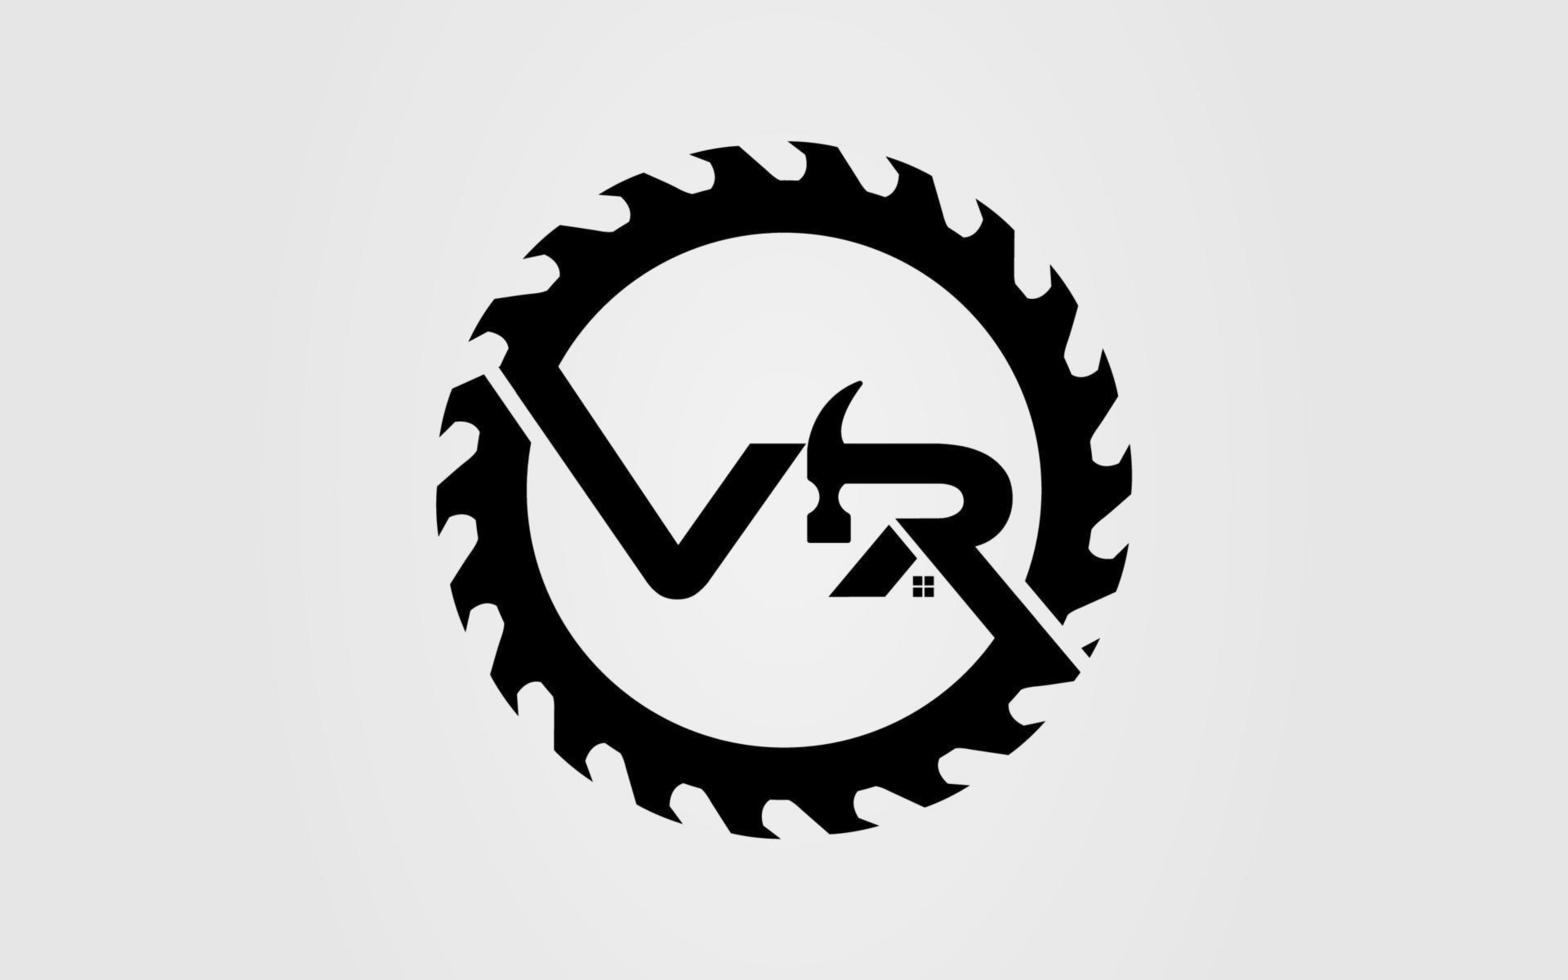 logo initial vr mit kreissäge symbol vorlage vektor